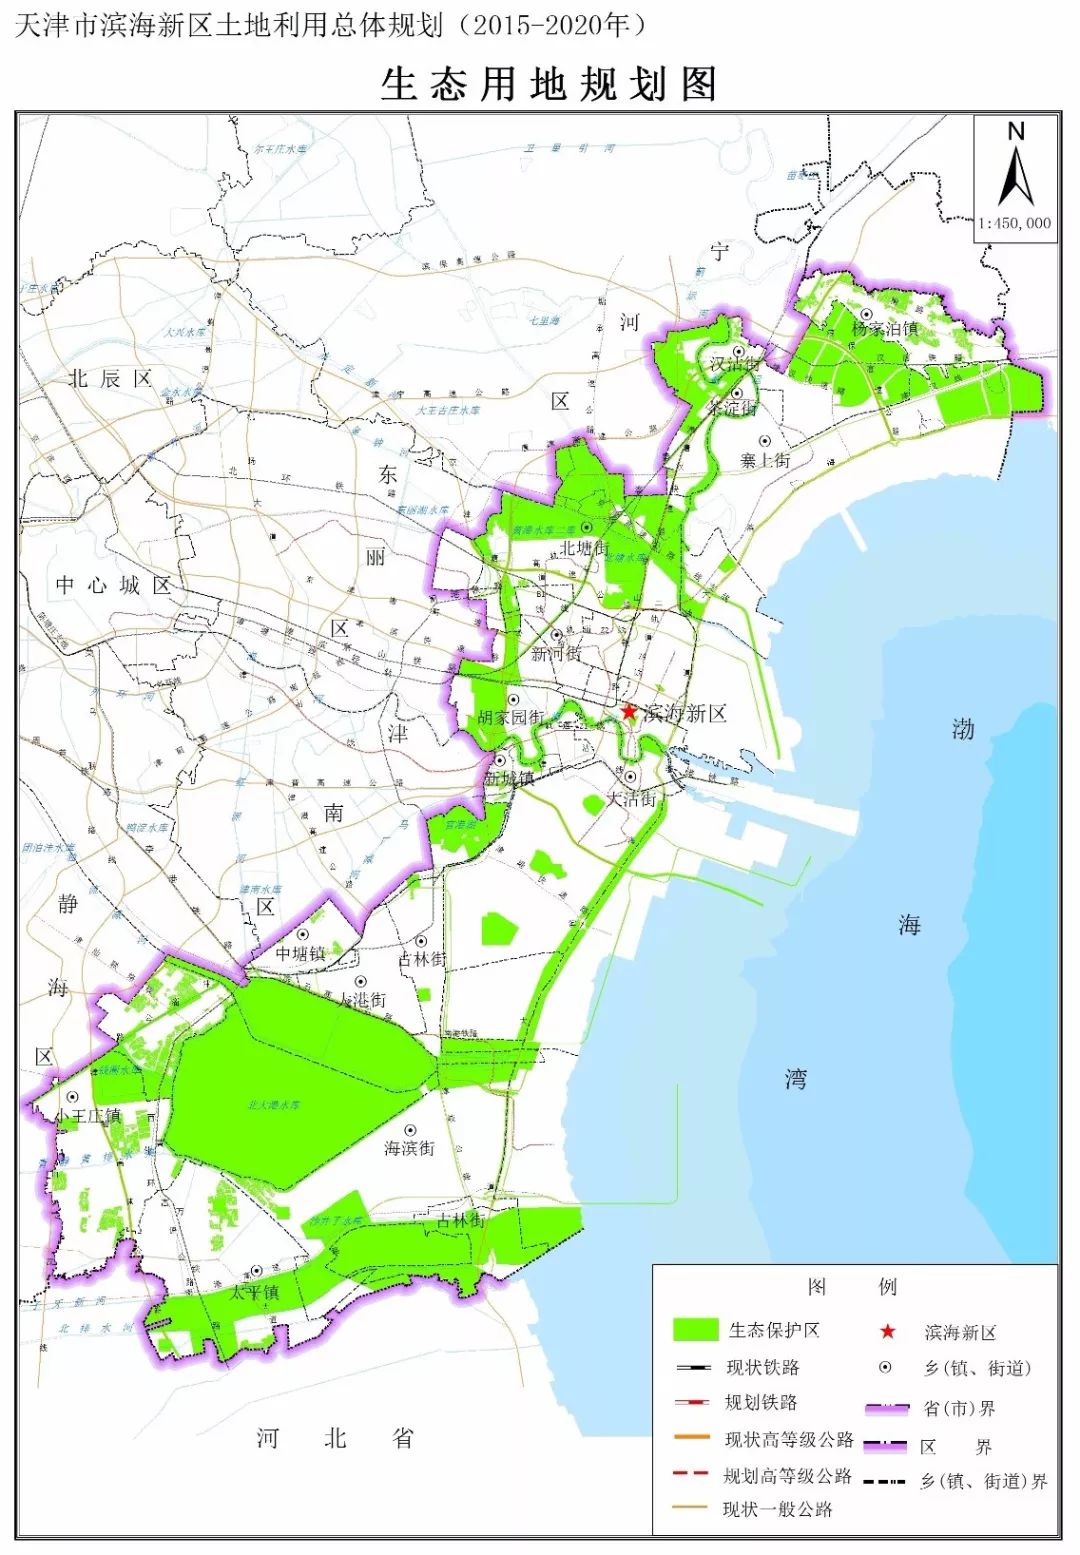 滨海新区土地利用总体规划发布!2020年将建成这样